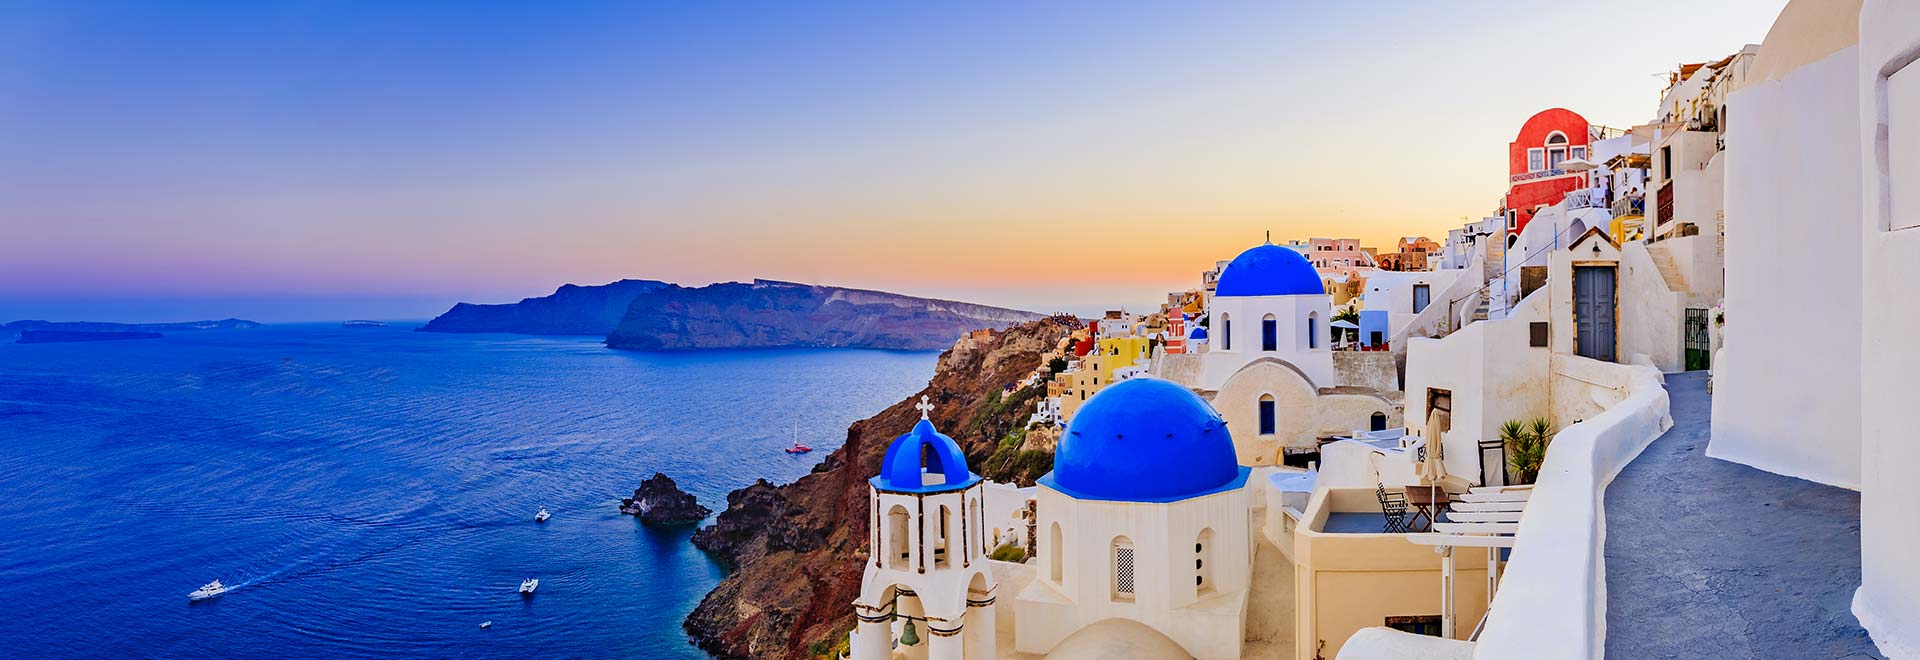 Europe Greece Greek Isle Cruise MH